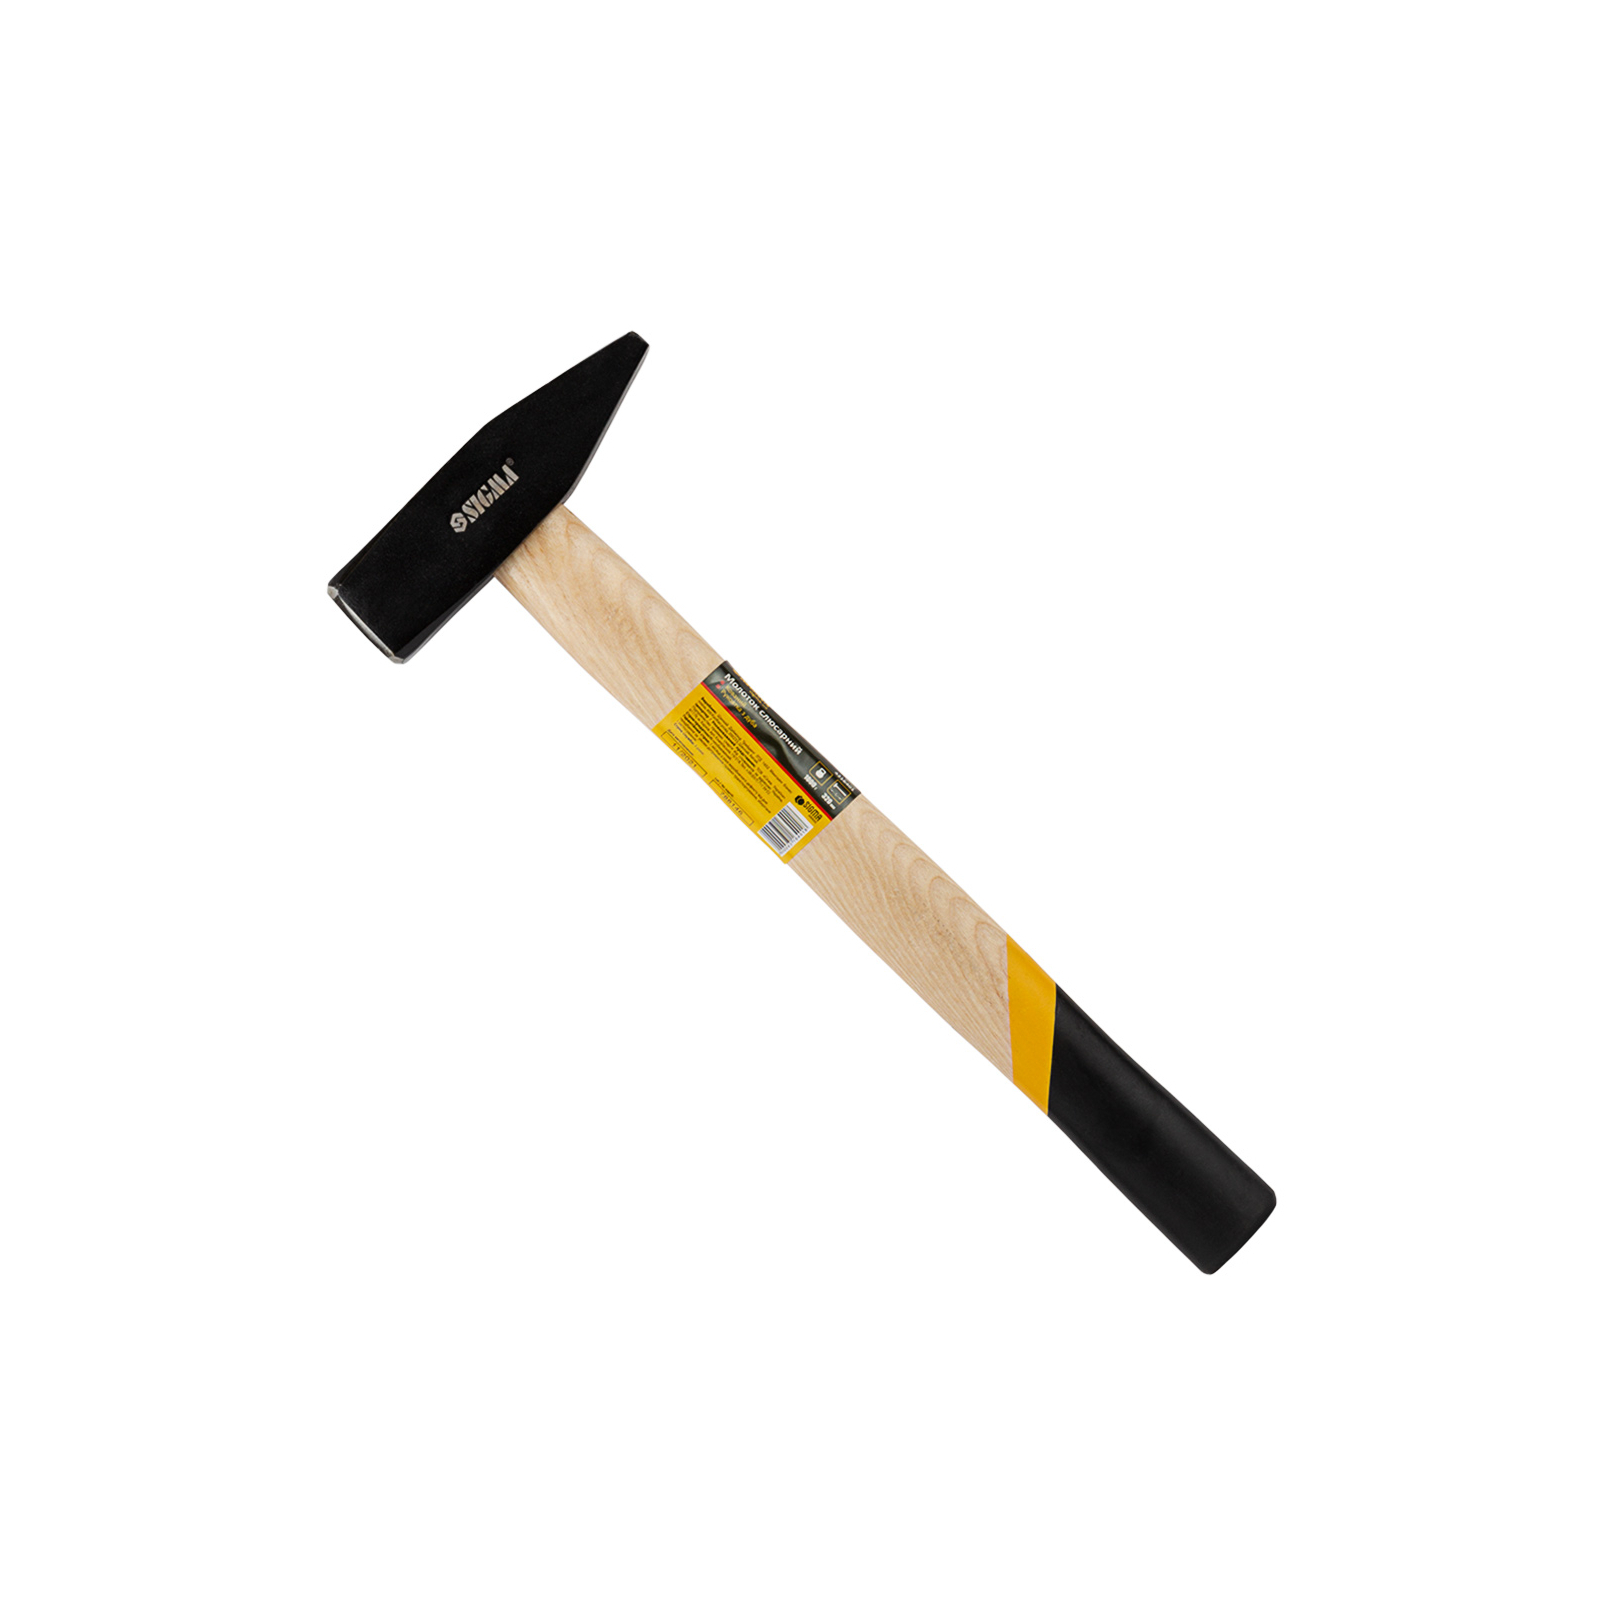 Молоток Sigma 300г слесарный деревянная ручка (дуб) (4316331)